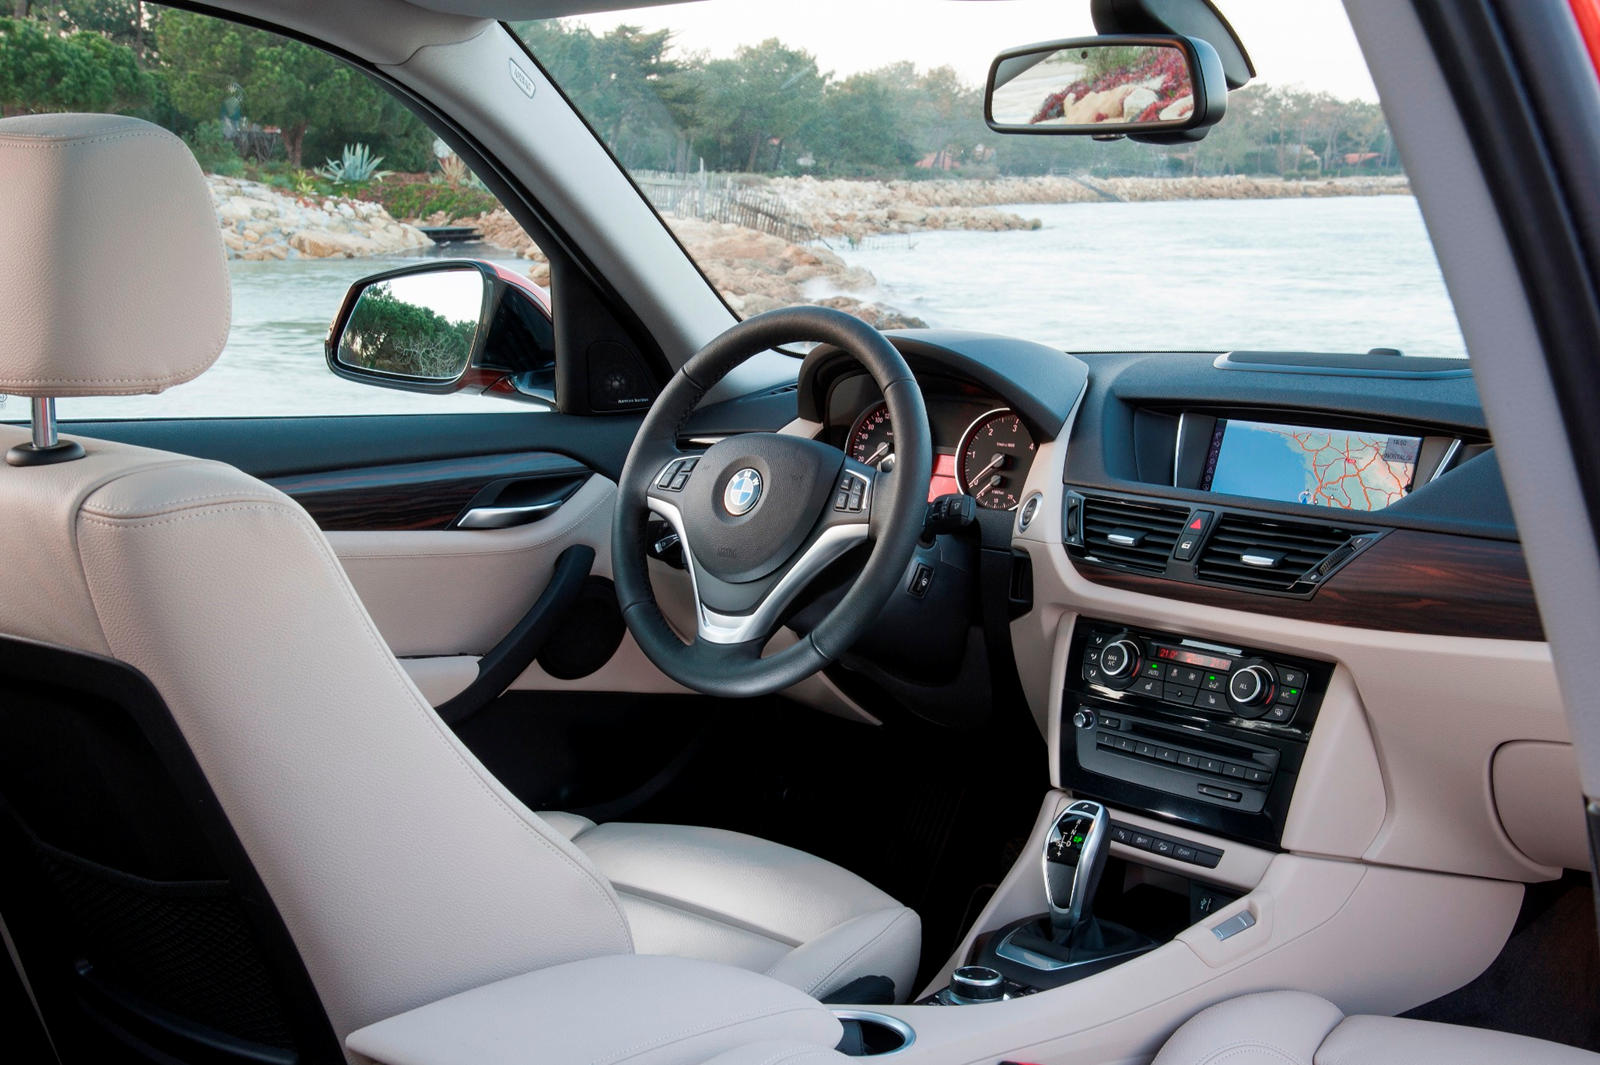 Photos & Video: 2014 BMW X1 Photos & Video - Consumer Reports